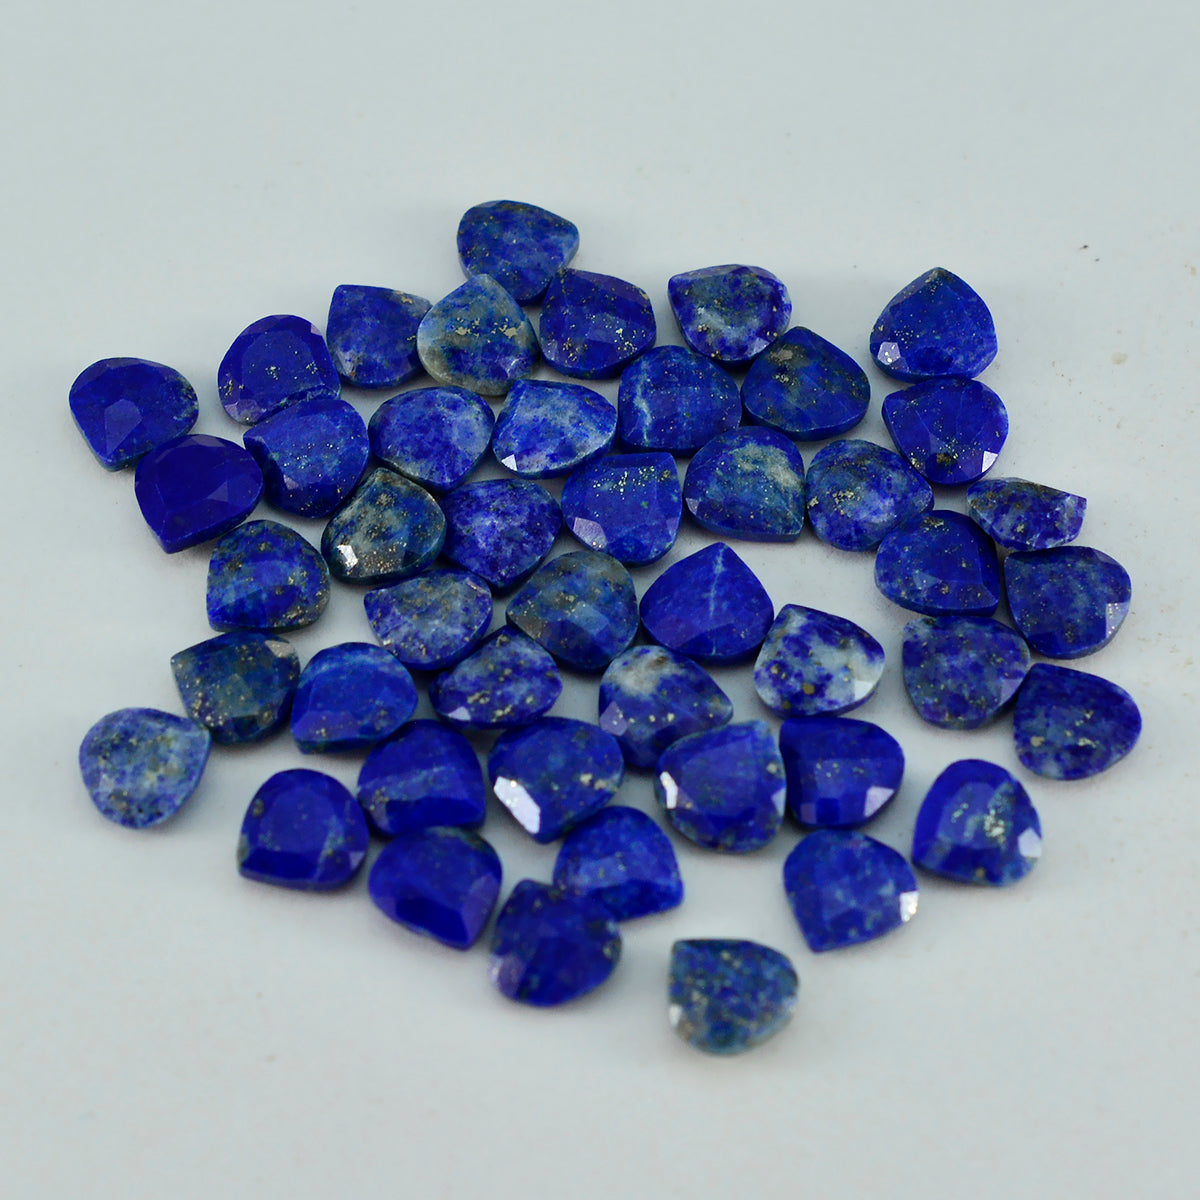 Riyogems, 1 pieza, lapislázuli azul real facetado, 7x7mm, forma de corazón, gemas sueltas de calidad fantástica